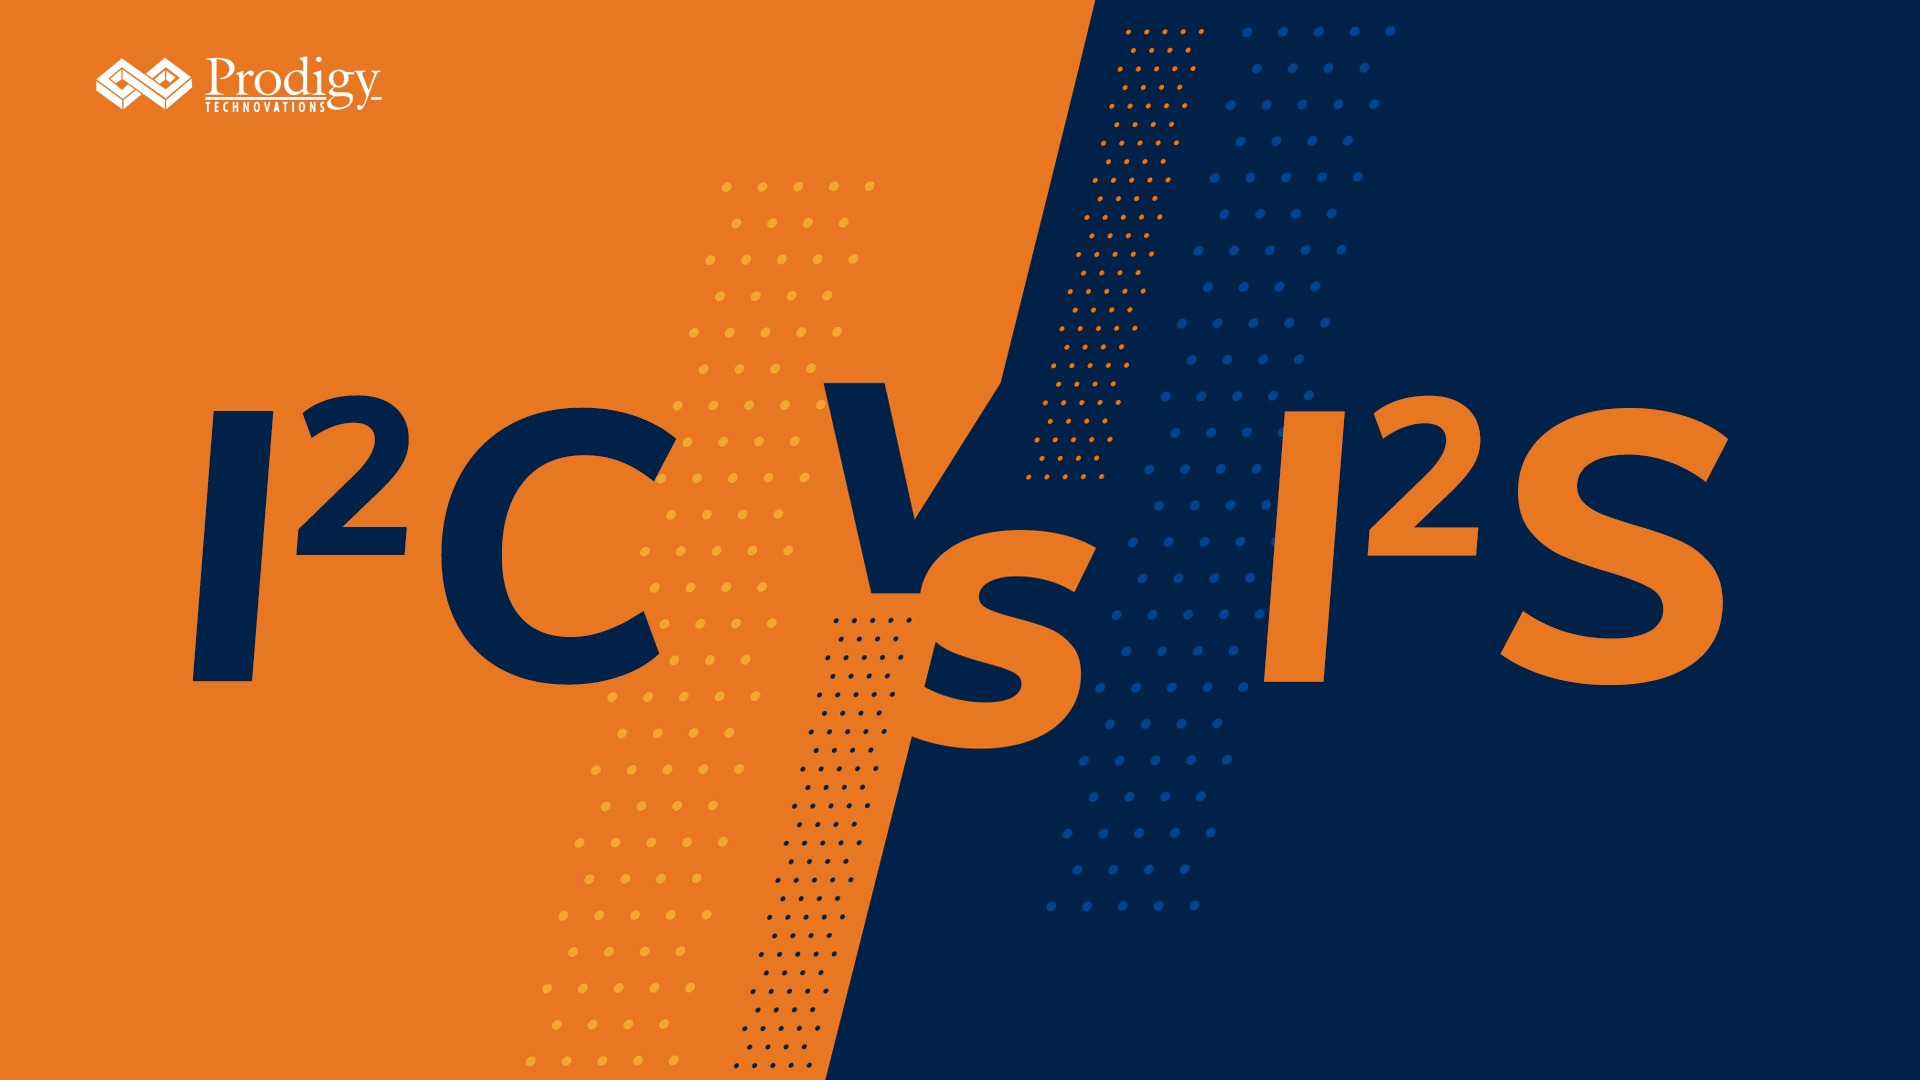 I2C vs I2S